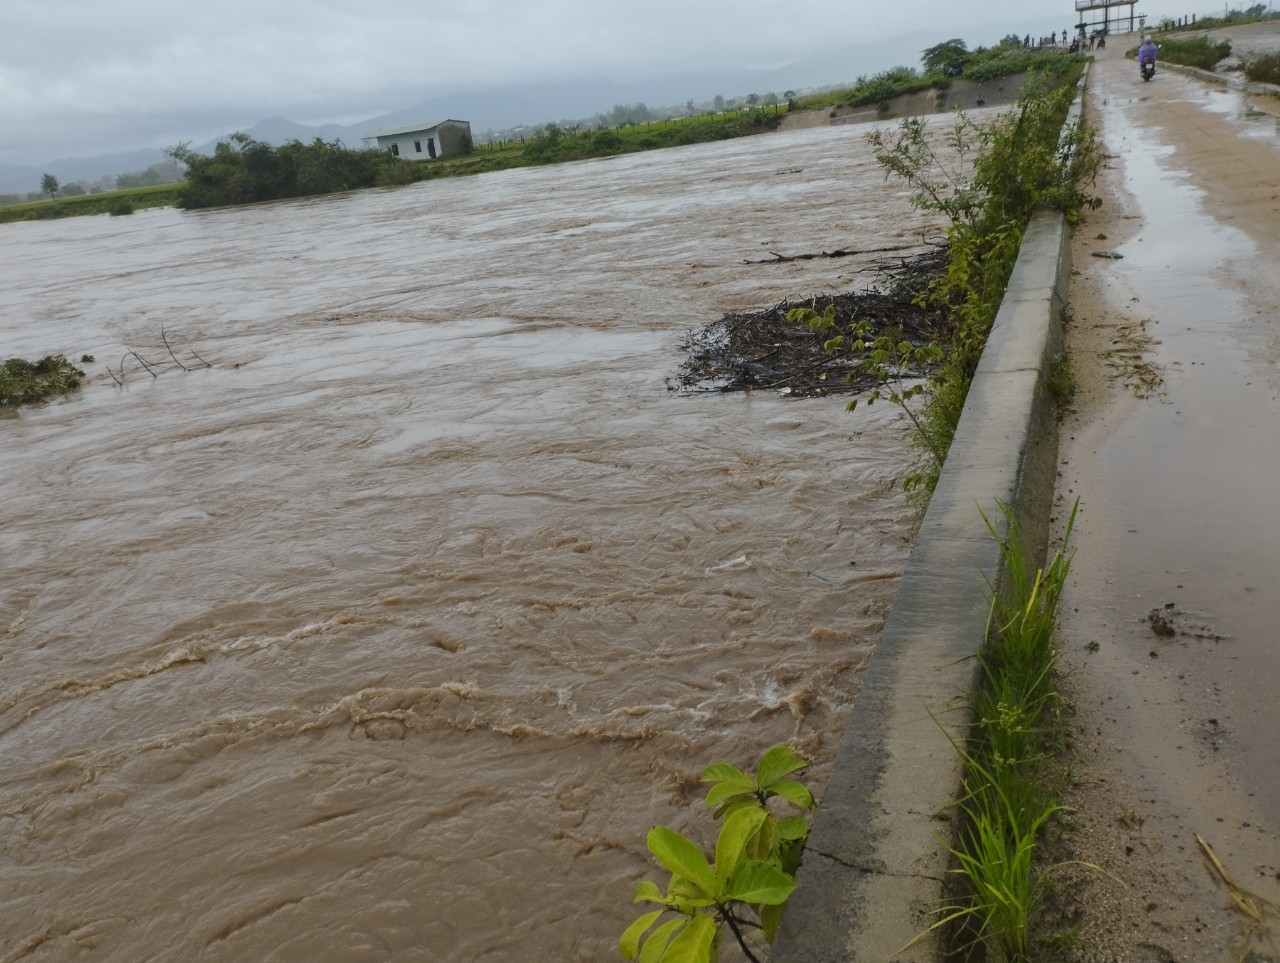  Mực nước đang dâng cao tại huyện Phú Thiện.  Ảnh: C.T.V.